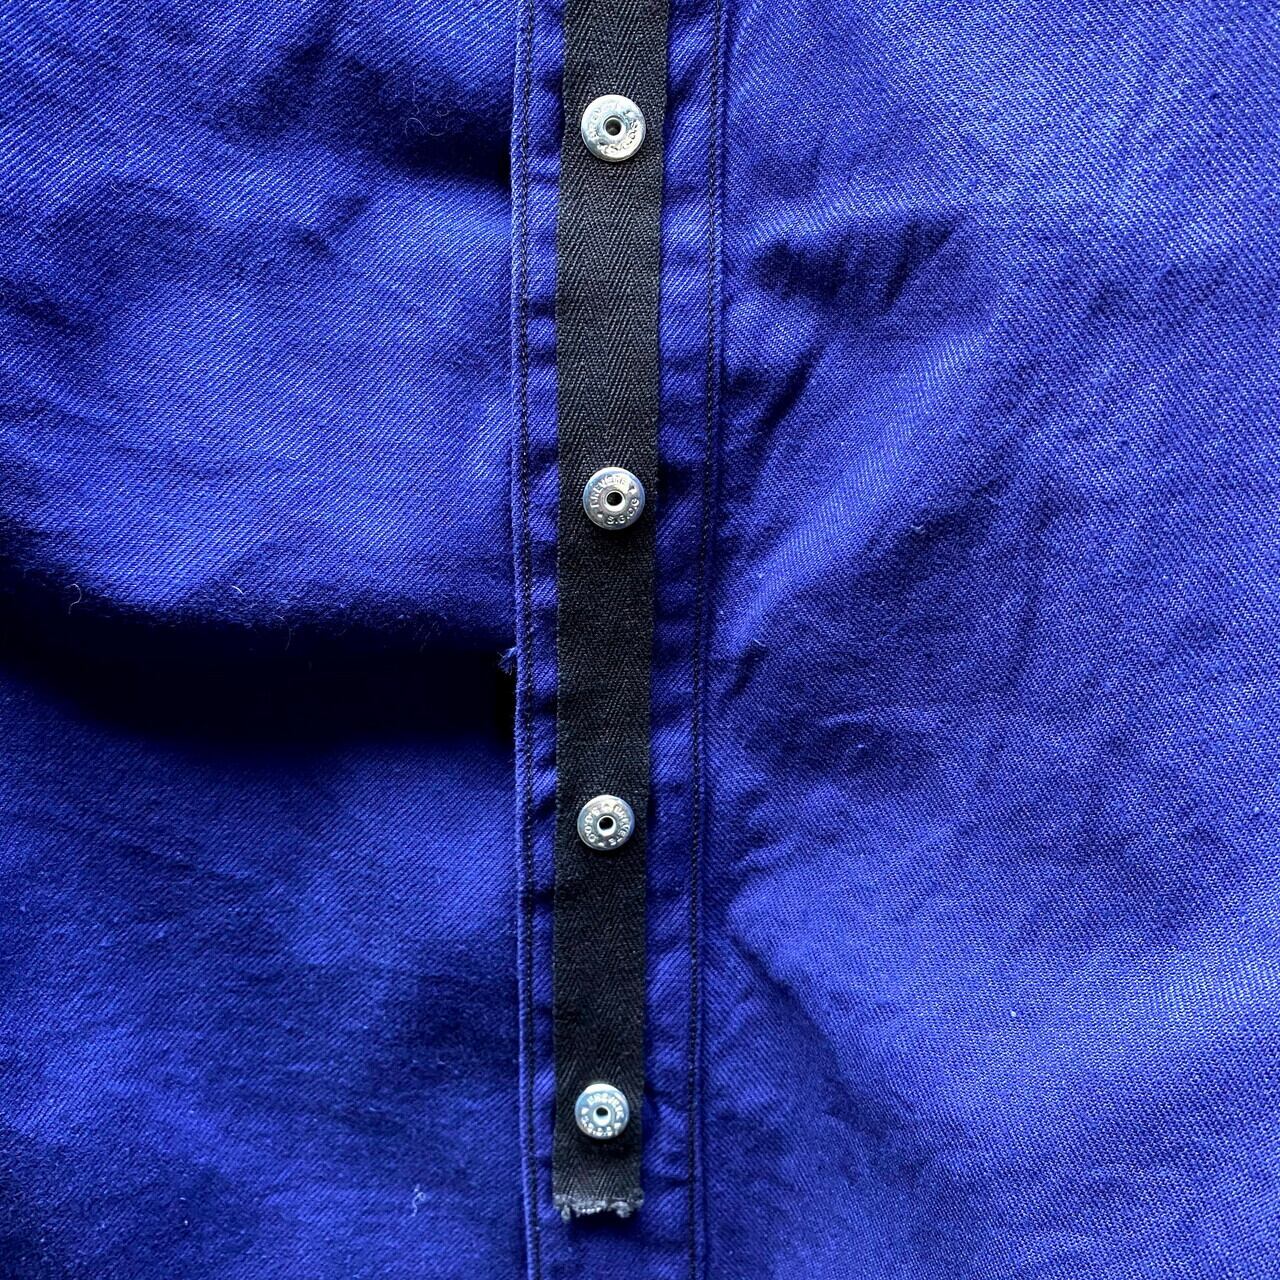 ヨーロッパ ヴィンテージ 貴重 60s 濃紺 ワークジャケット カバーオール